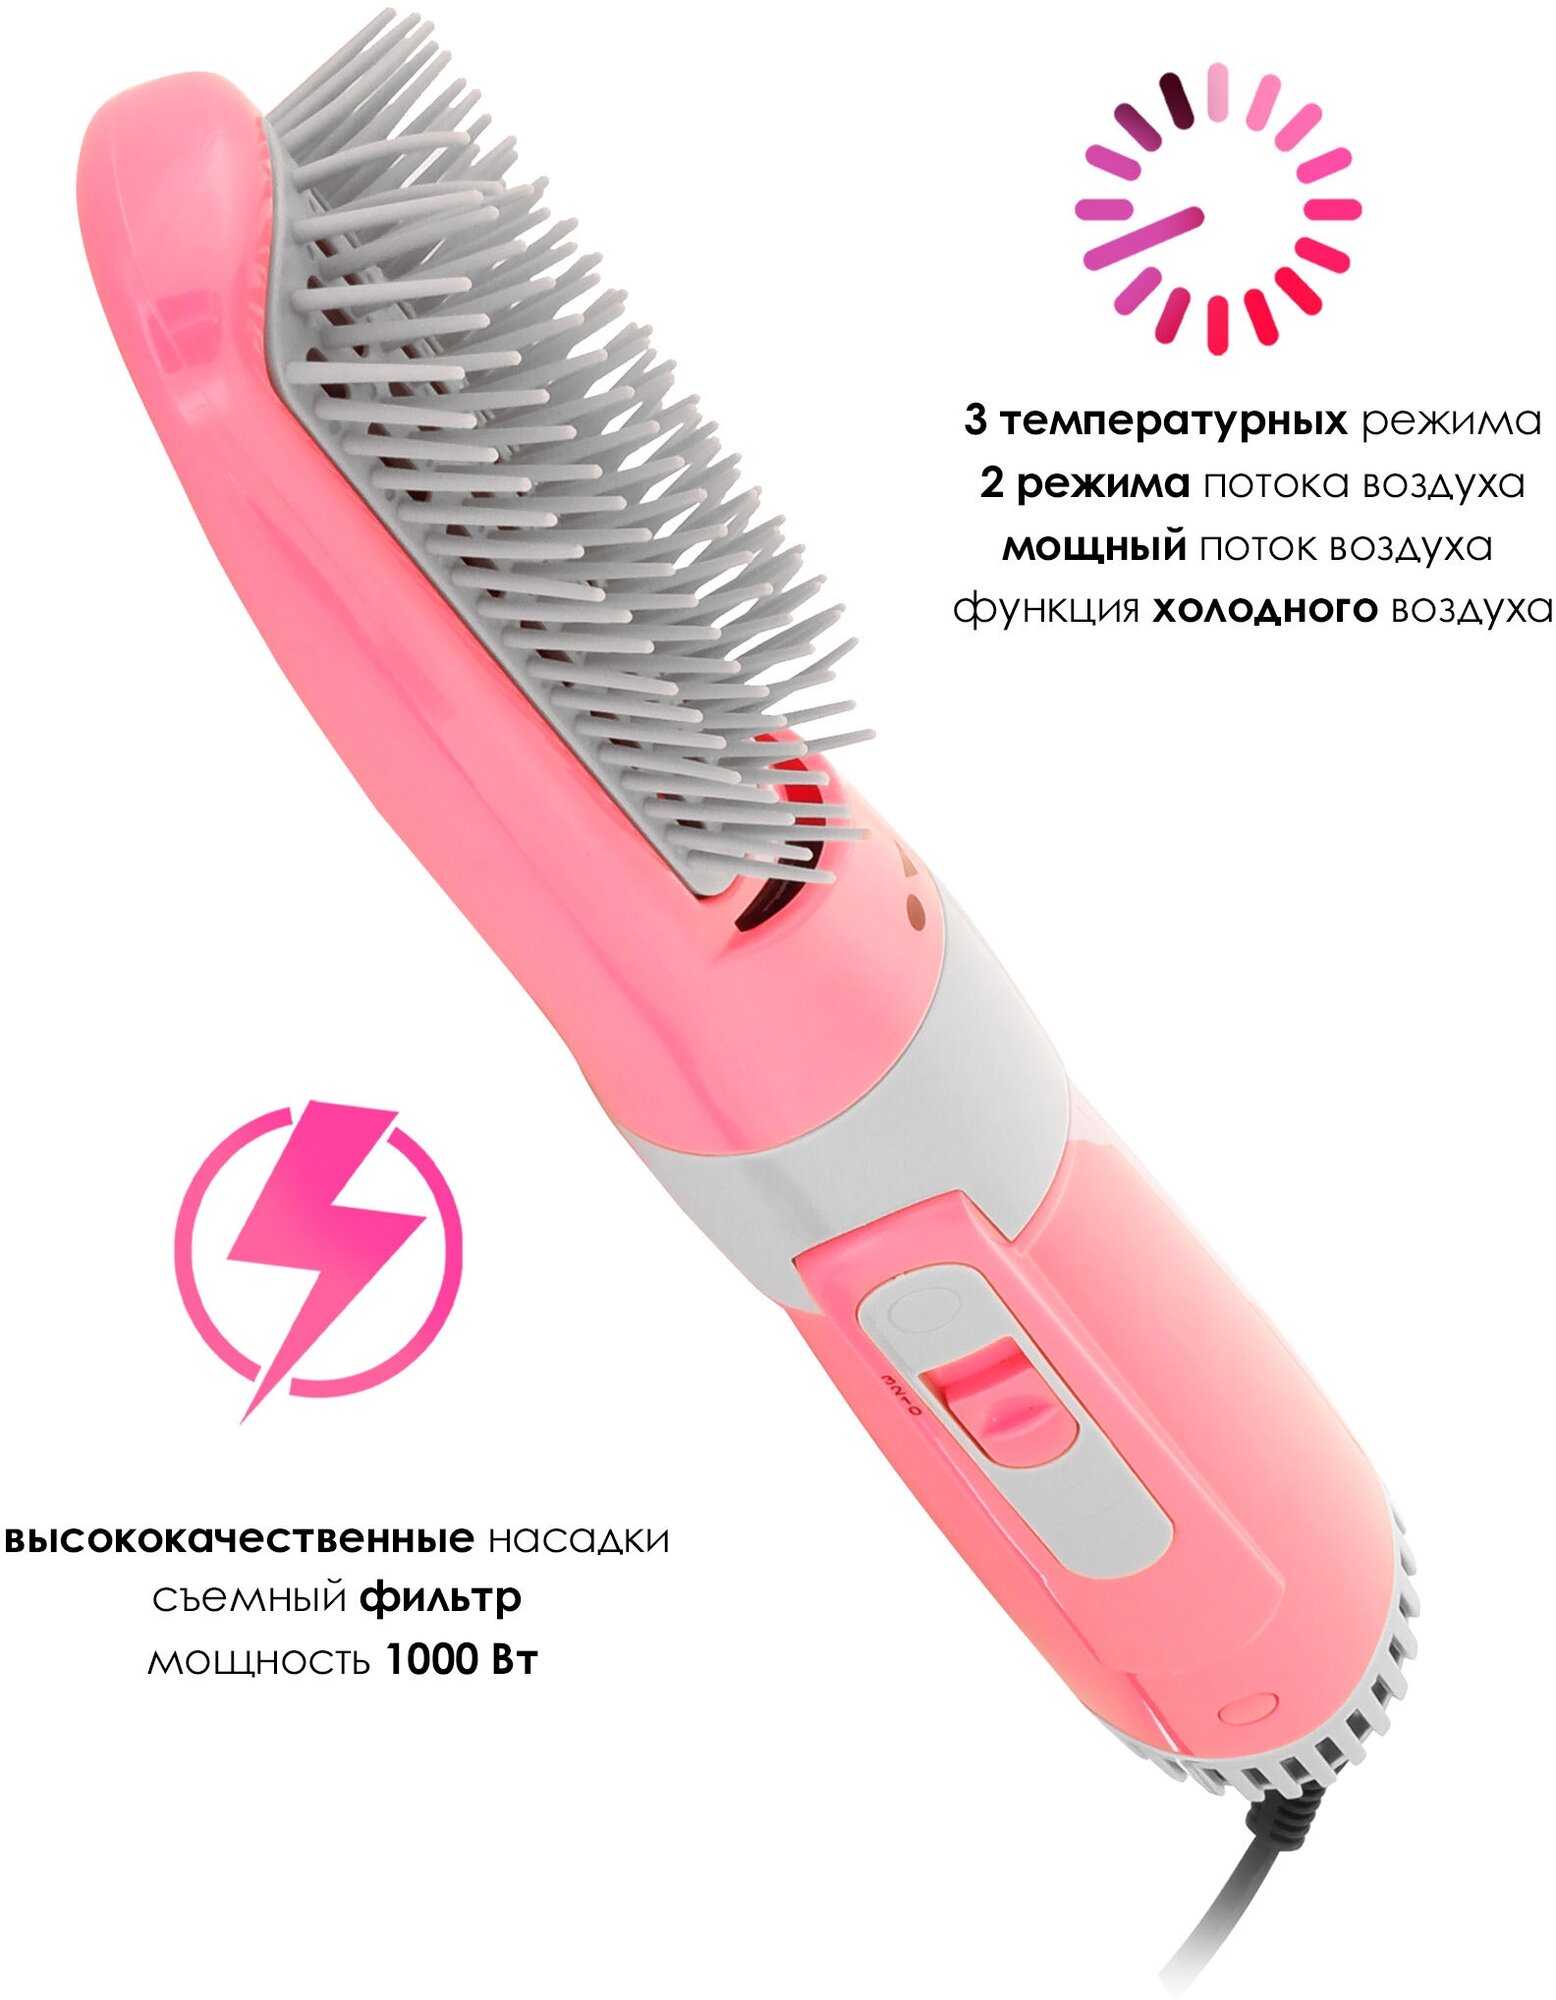 Профессиональный фен щетка для волос/ Термощетка для укладки волос / Стайлер / Фен расческа